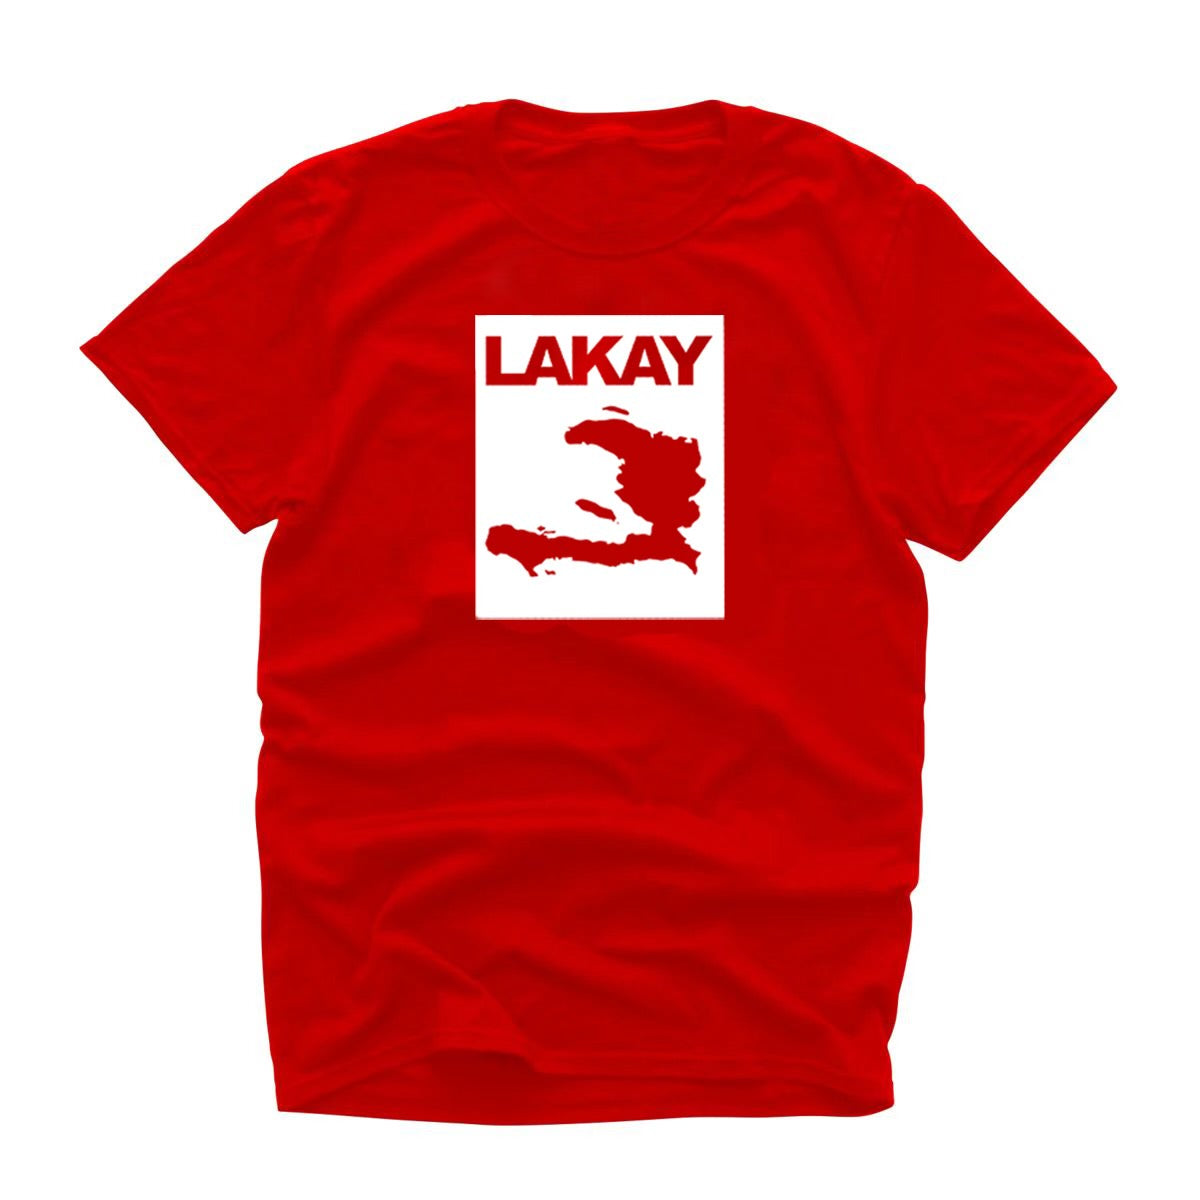 Lakay Red